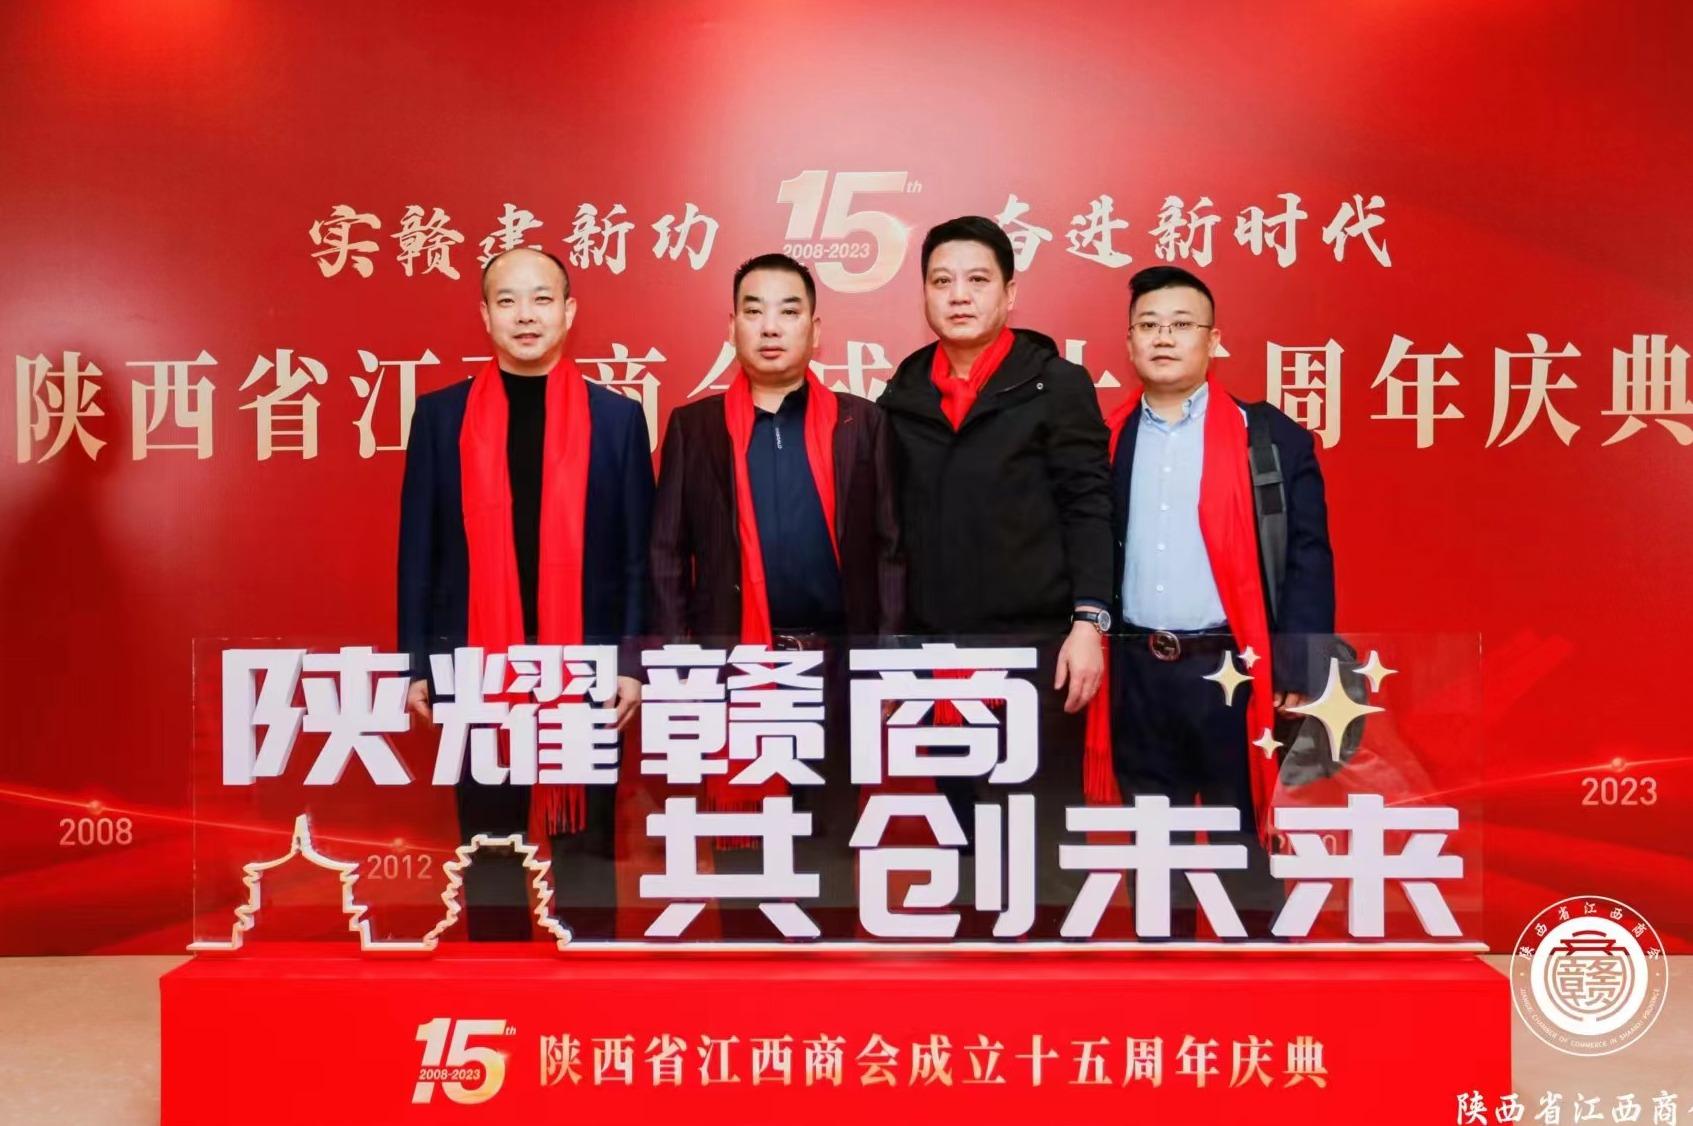 安徽省江西商会应邀出席陕西省江西商会成立15周年庆典